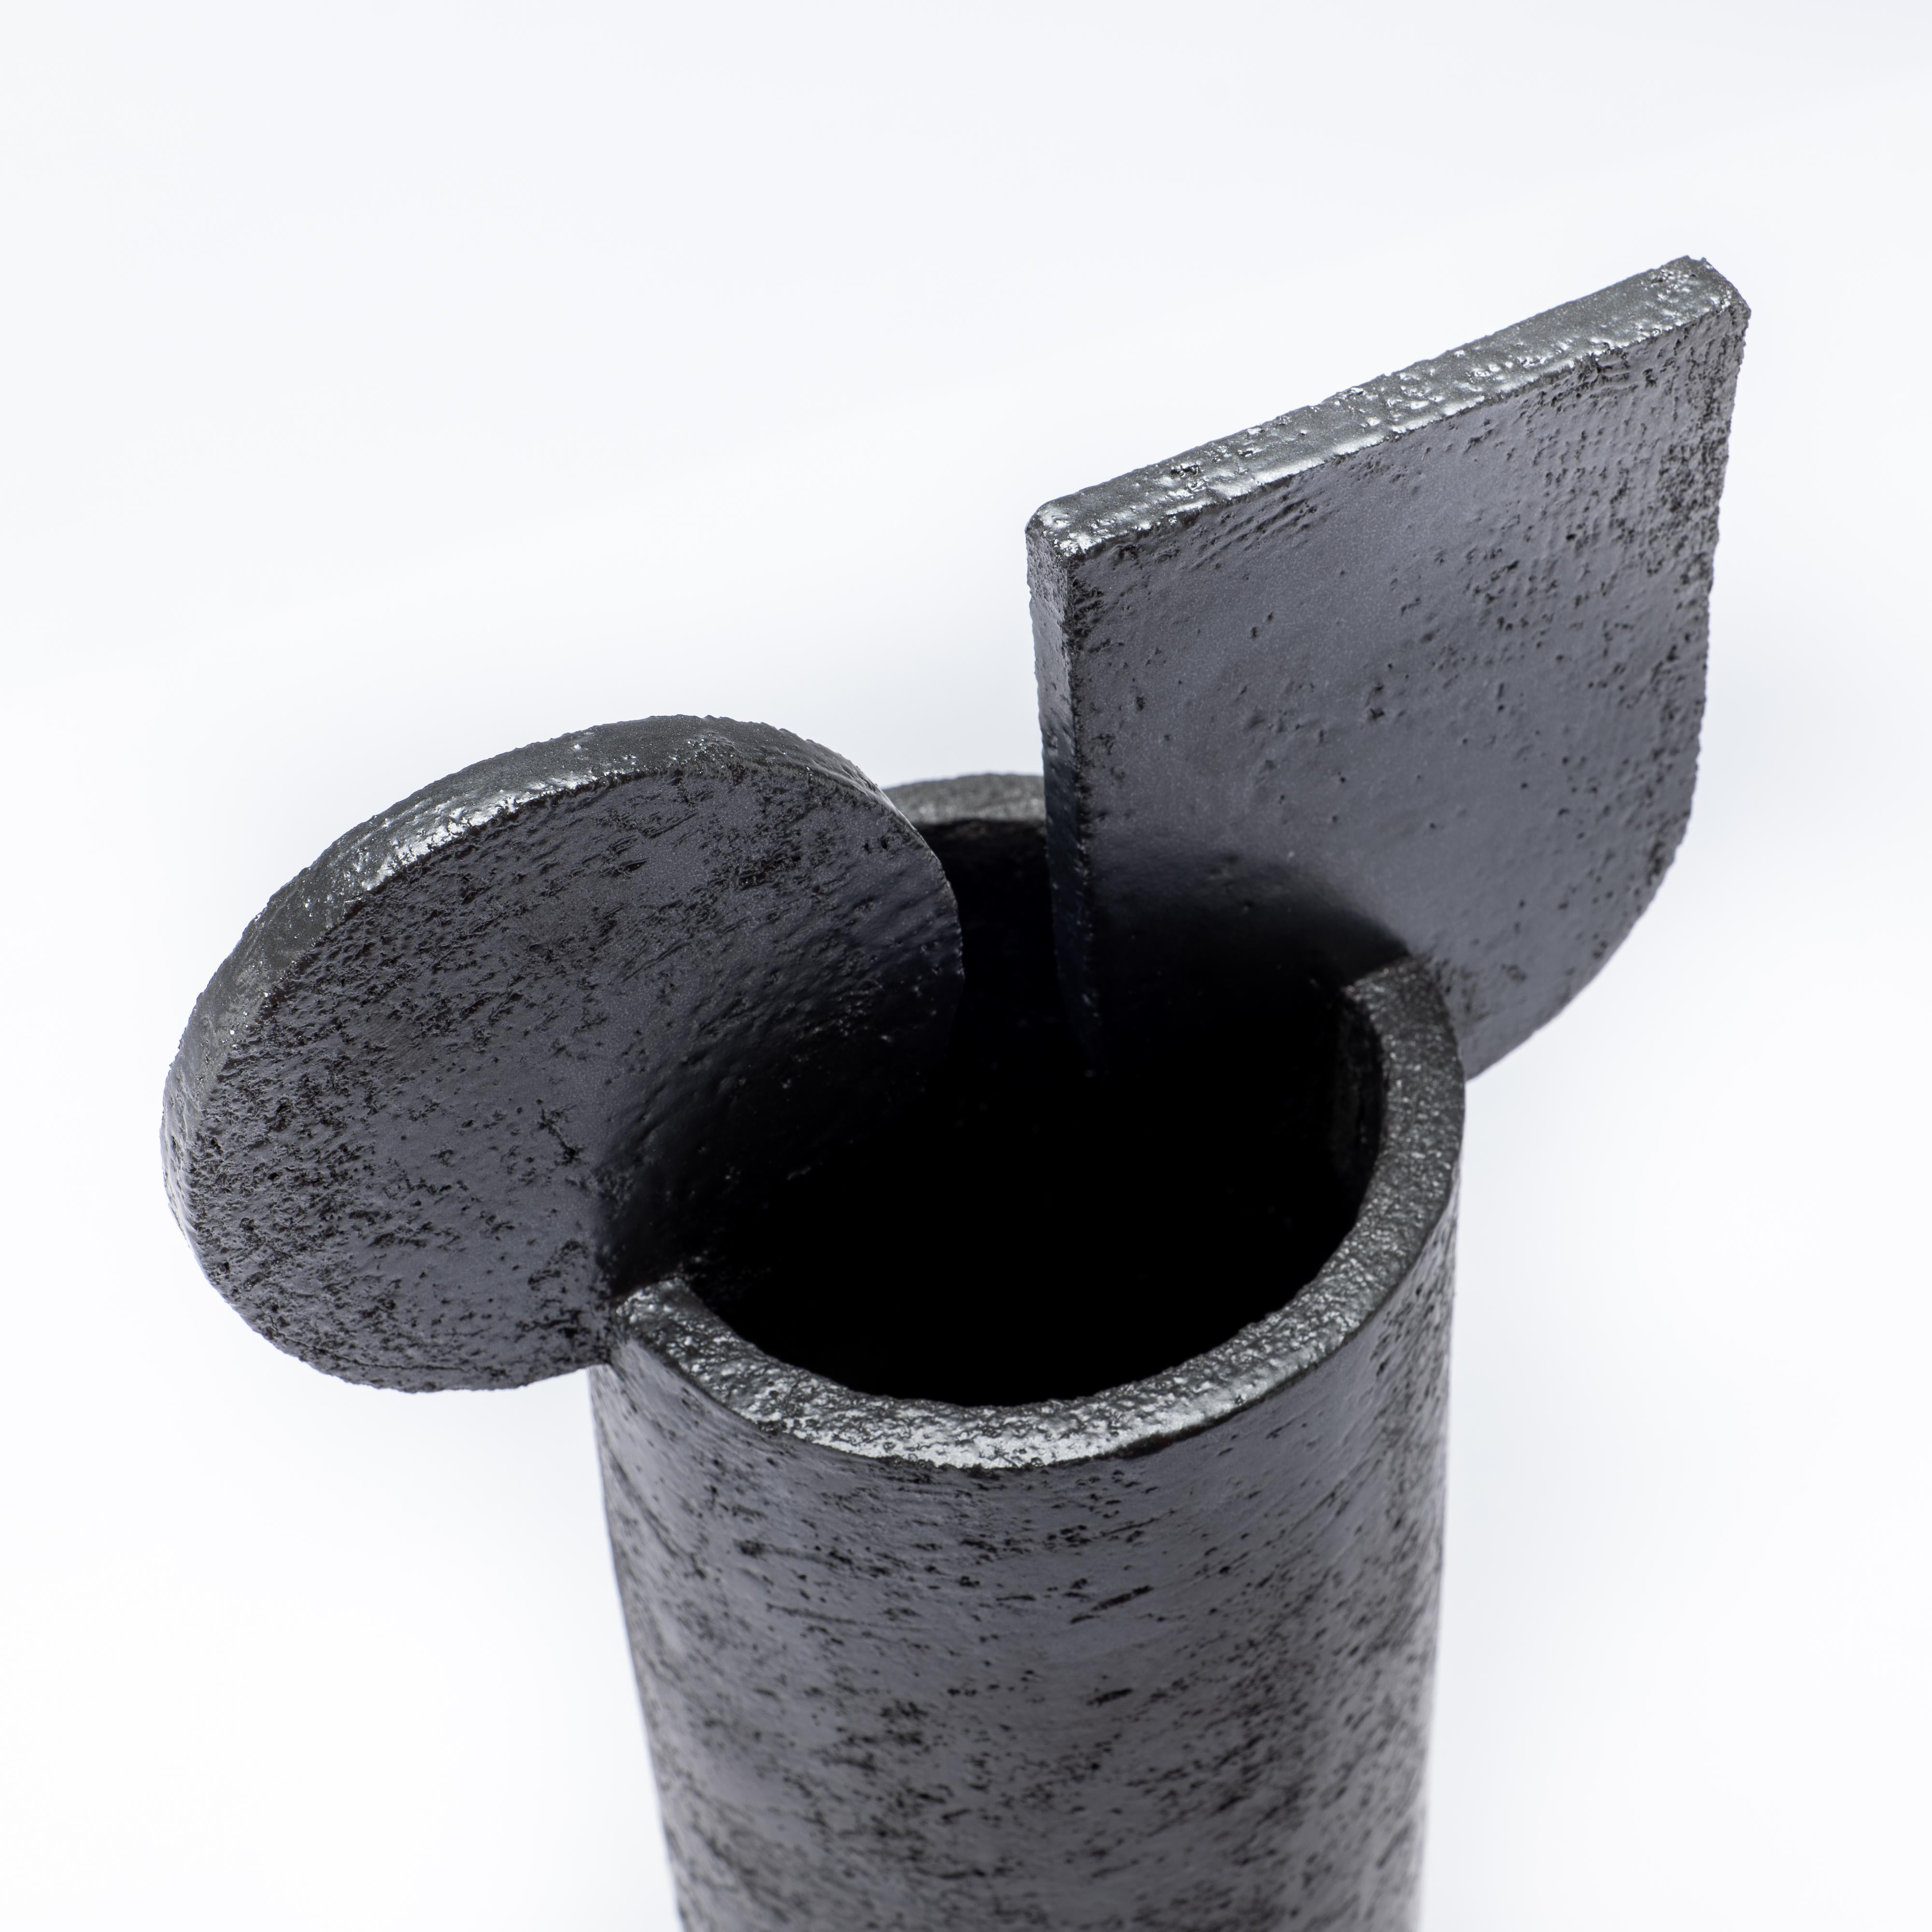 Fait main Vase contemporain Cuorecarpenito en terre cuite émaillée noire Collection Moaaustrale en vente